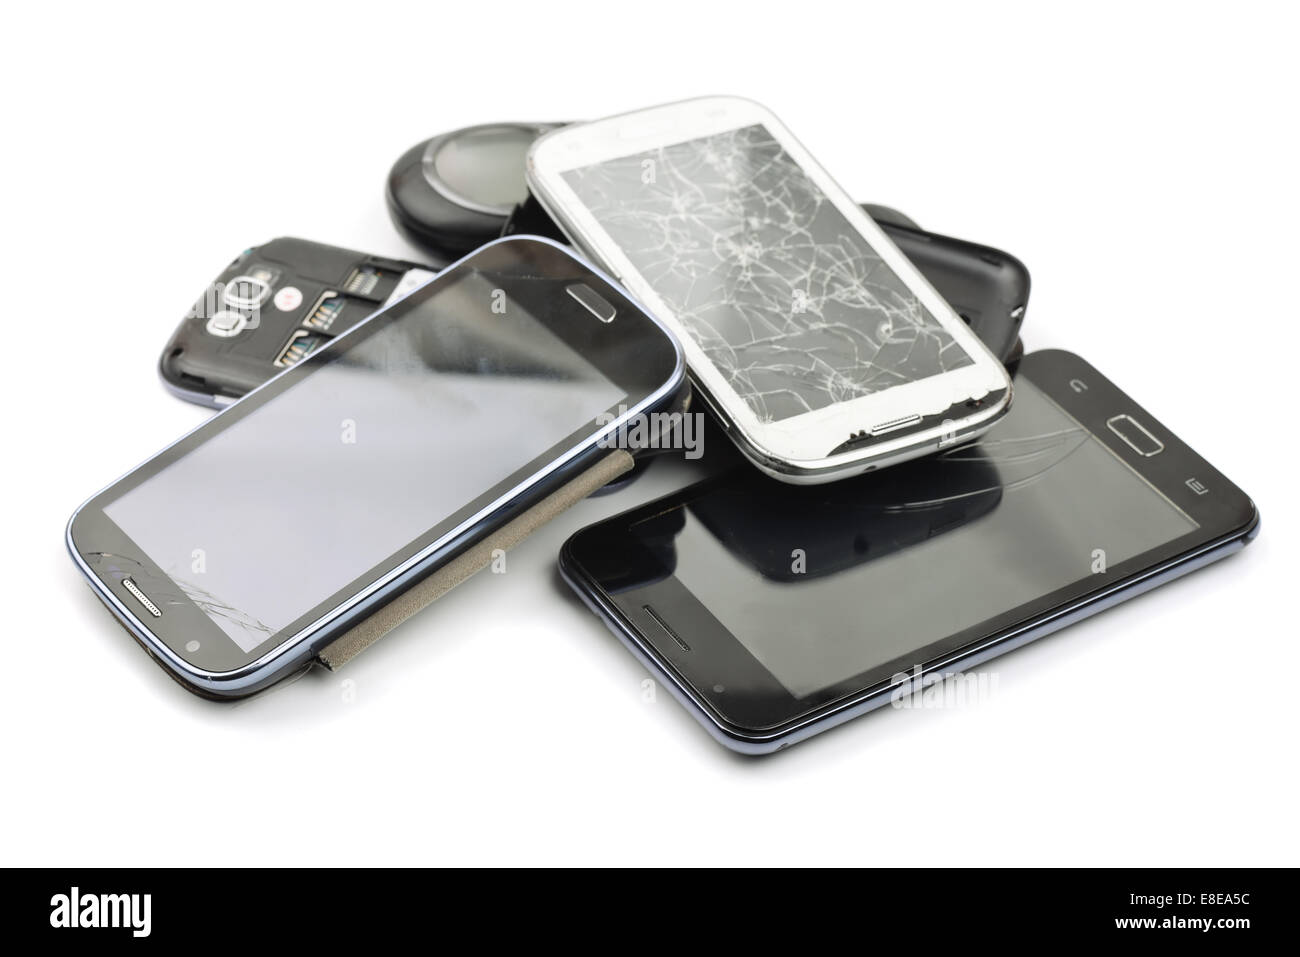 Pile of broken smart phones Stock Photo